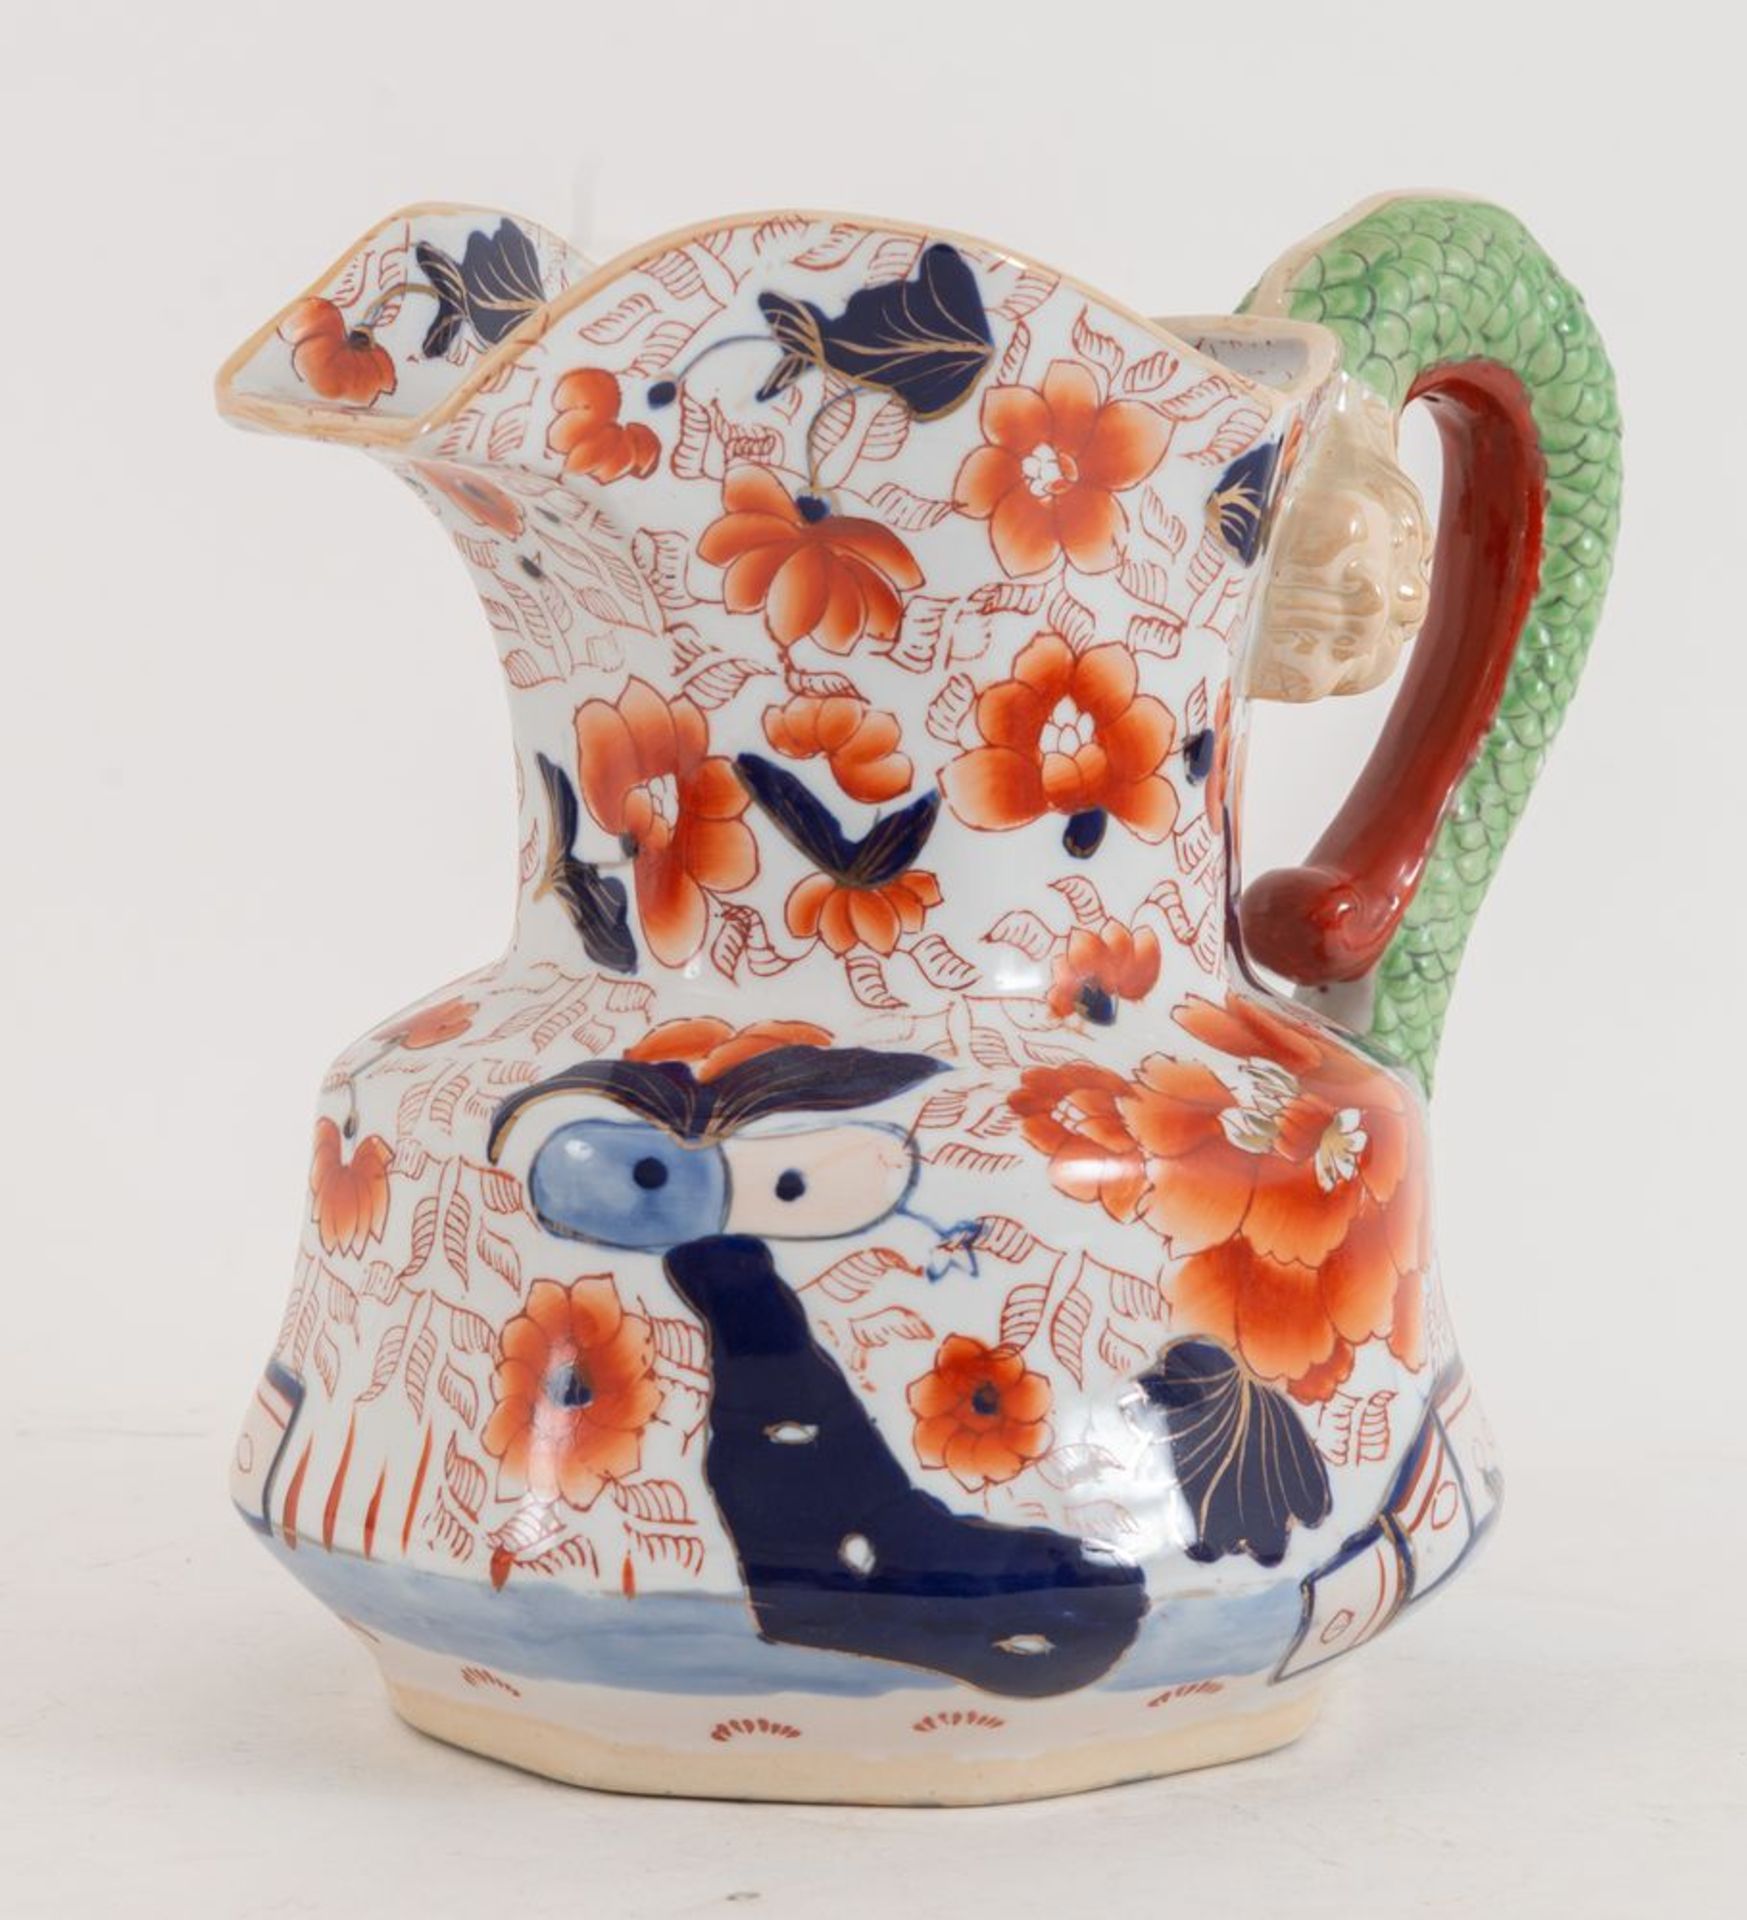 IRONSTOHE – China. Brocca in ceramica smaltata. Cm 23,5x25x22;